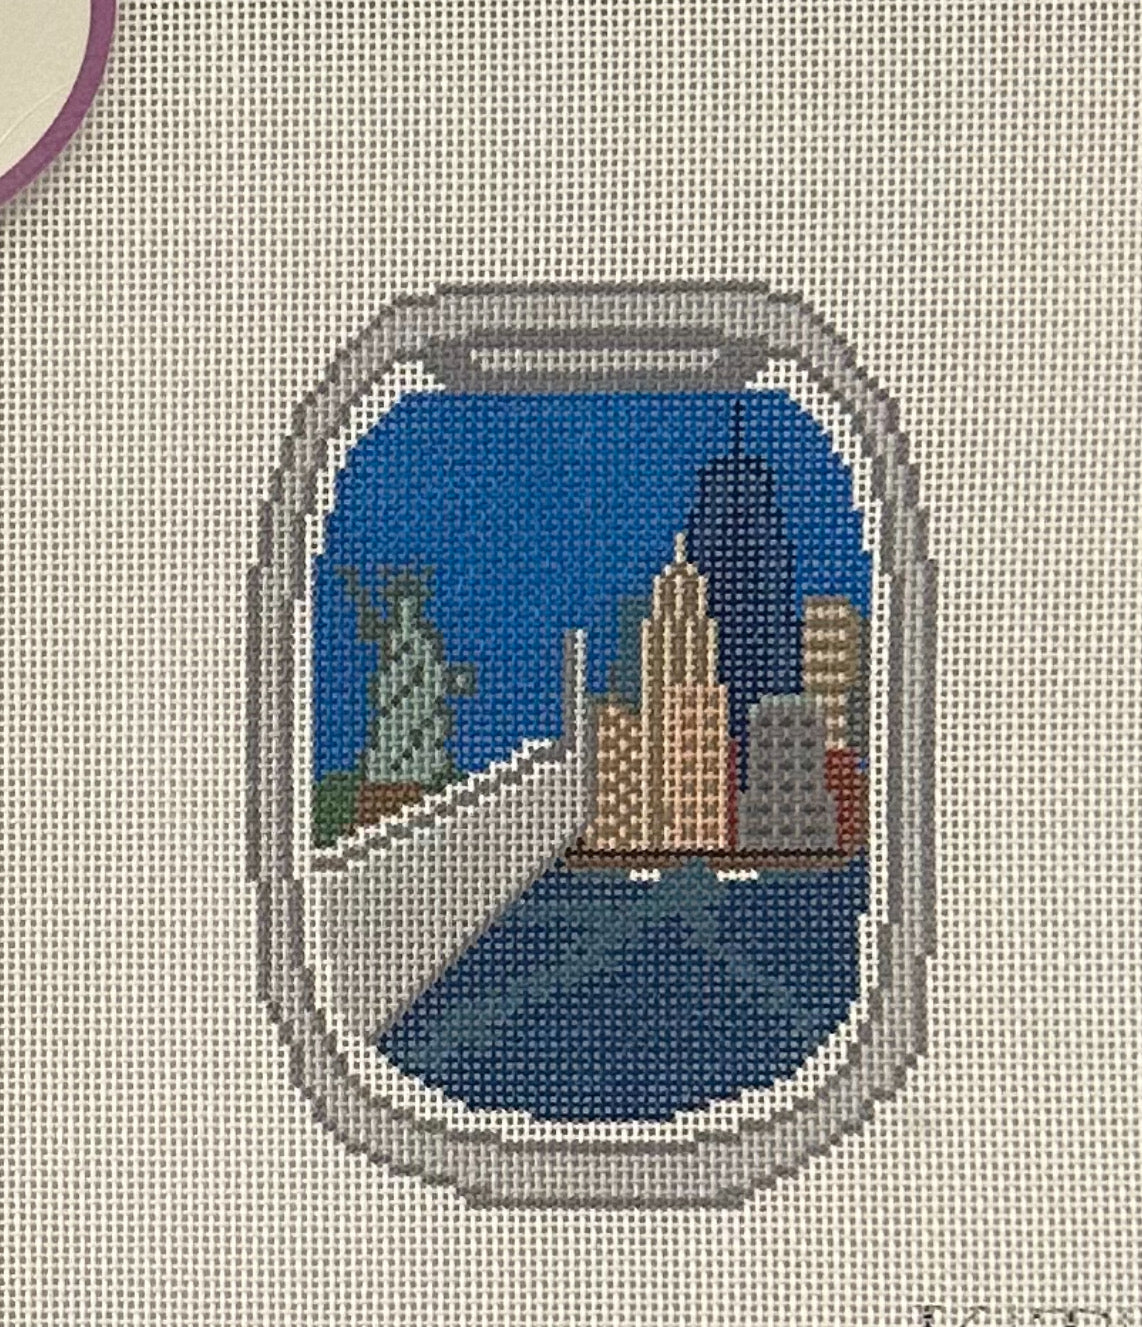 K53 NYC Plane Window